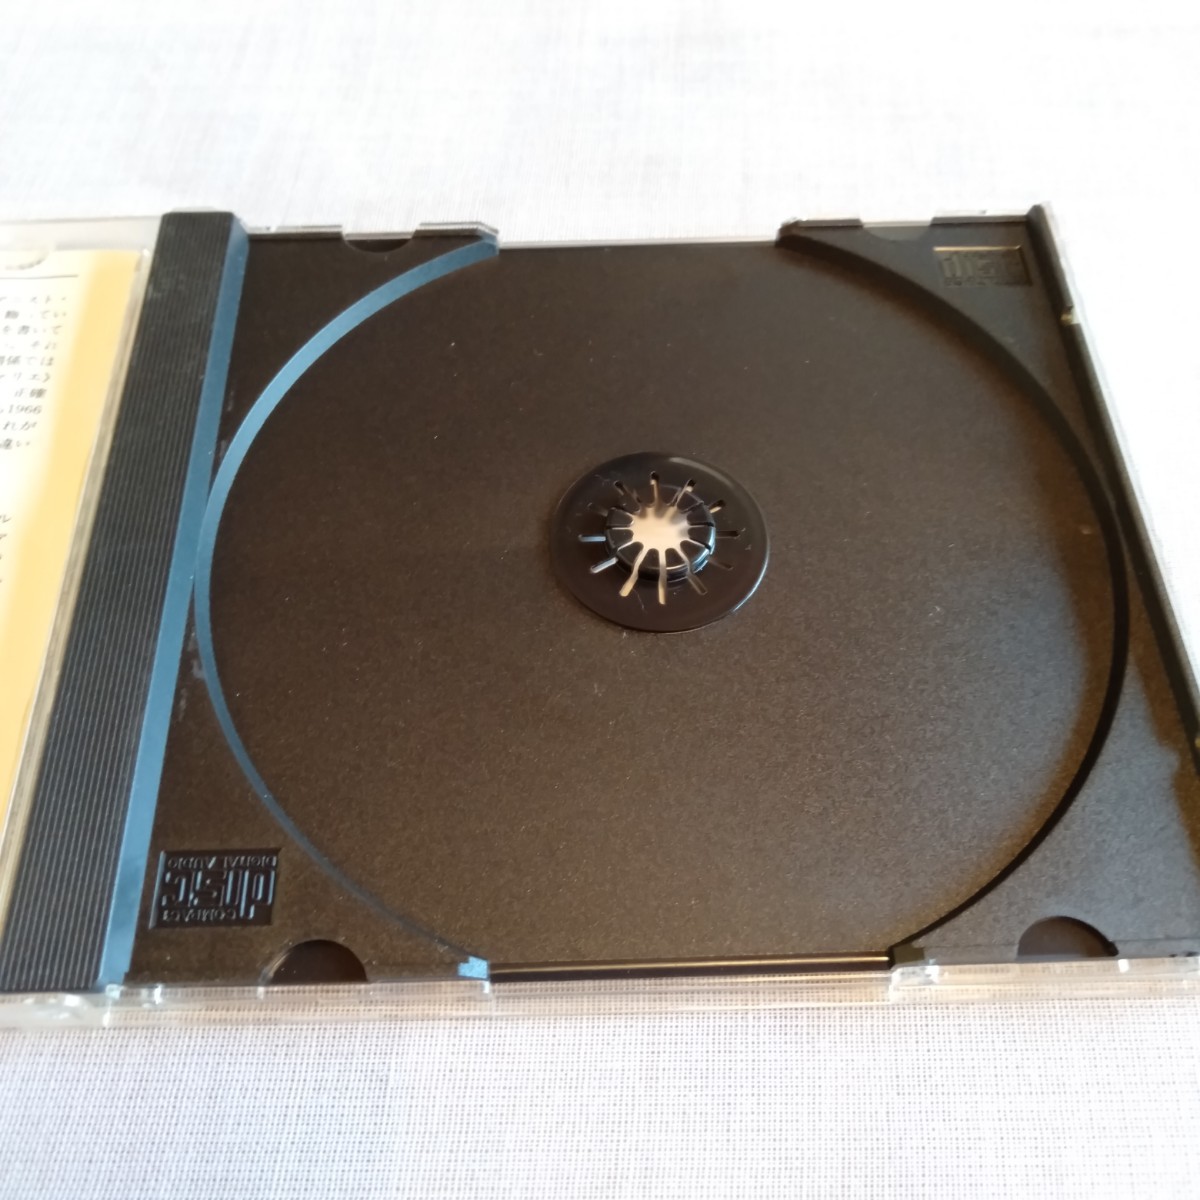 S287 月の光、シシリエンヌ・ヴァリエ〜ハープ・リサイタル 吉野直子 CD ケース状態A _画像6